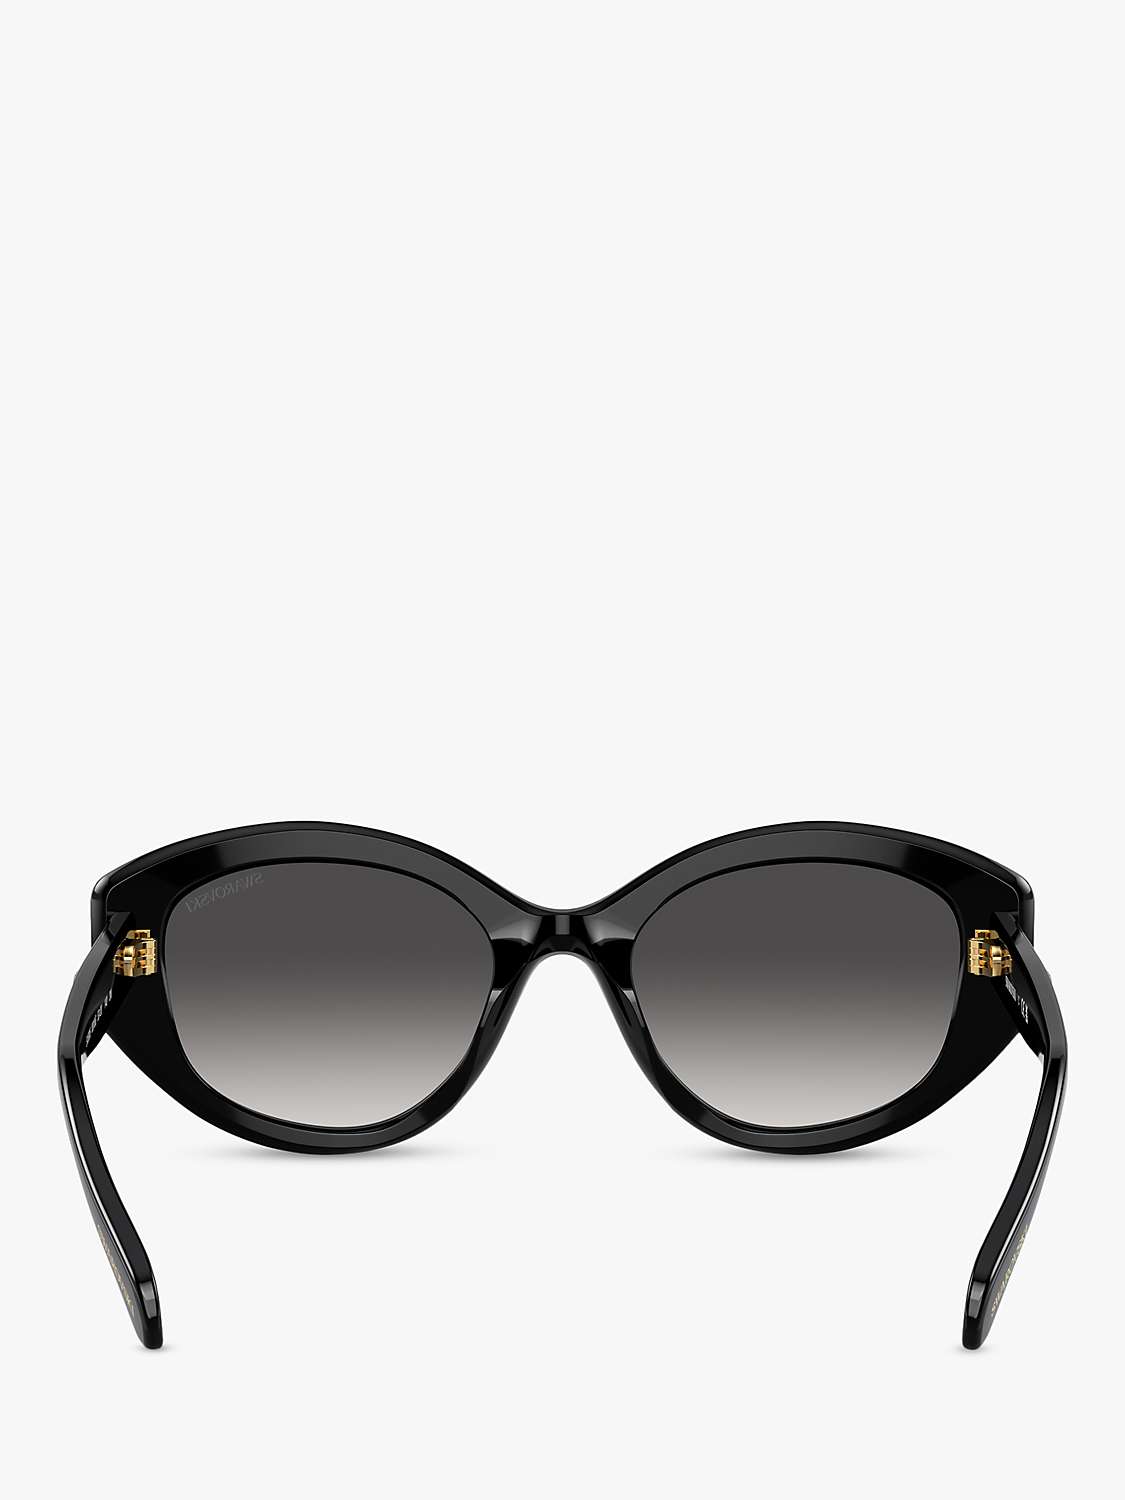 Buy Swarovski SK6005 Women's Embellished Irregular Sunglasses, Black/Grey Gradient Online at johnlewis.com